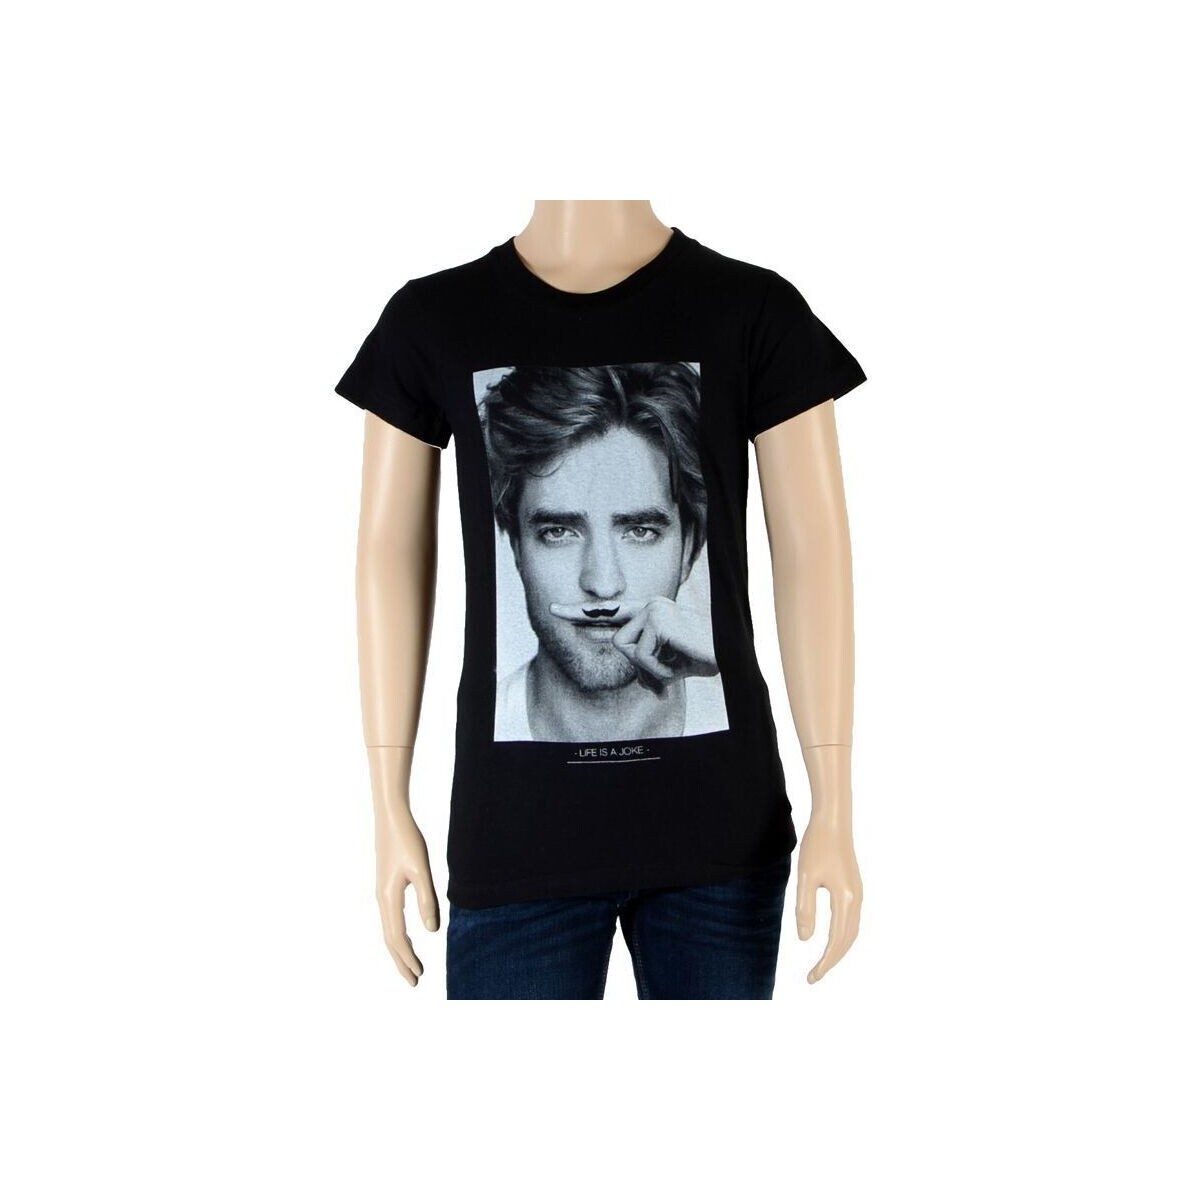 Vêtements Fille T-shirts manches courtes Eleven Paris Fille Little Berty Robert Pattinson Noir